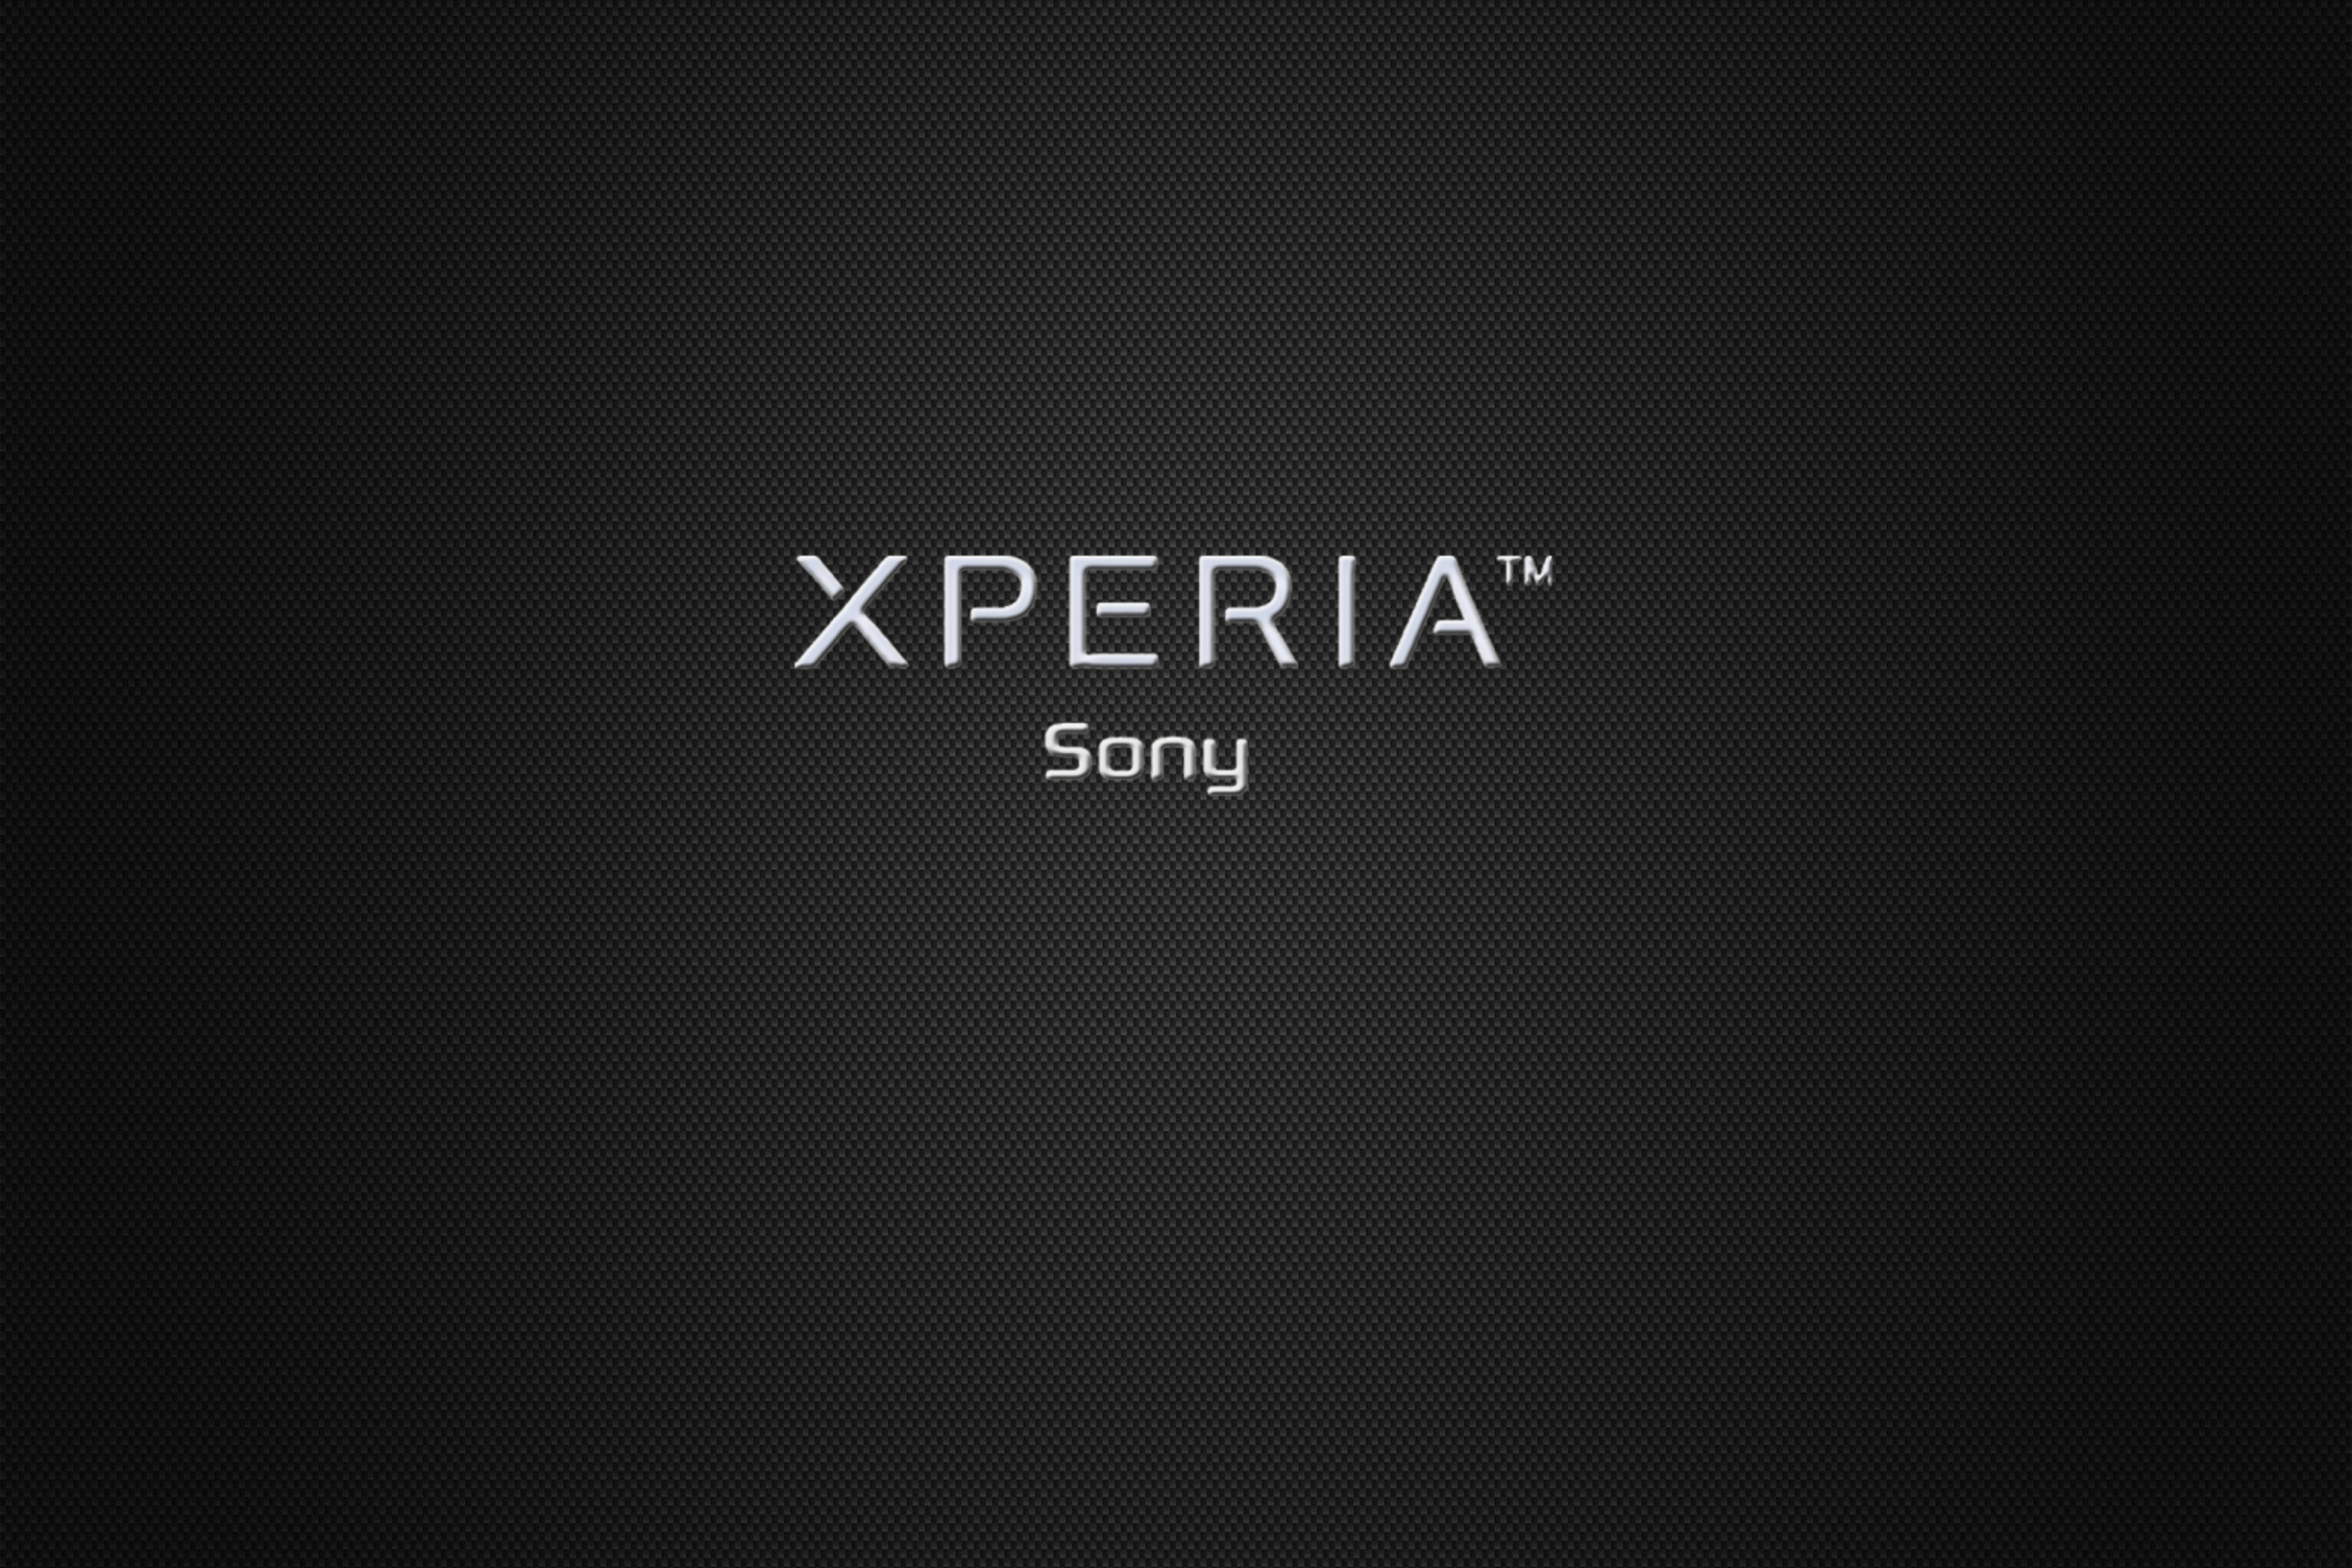 Sfondi Sony Xperia 2880x1920